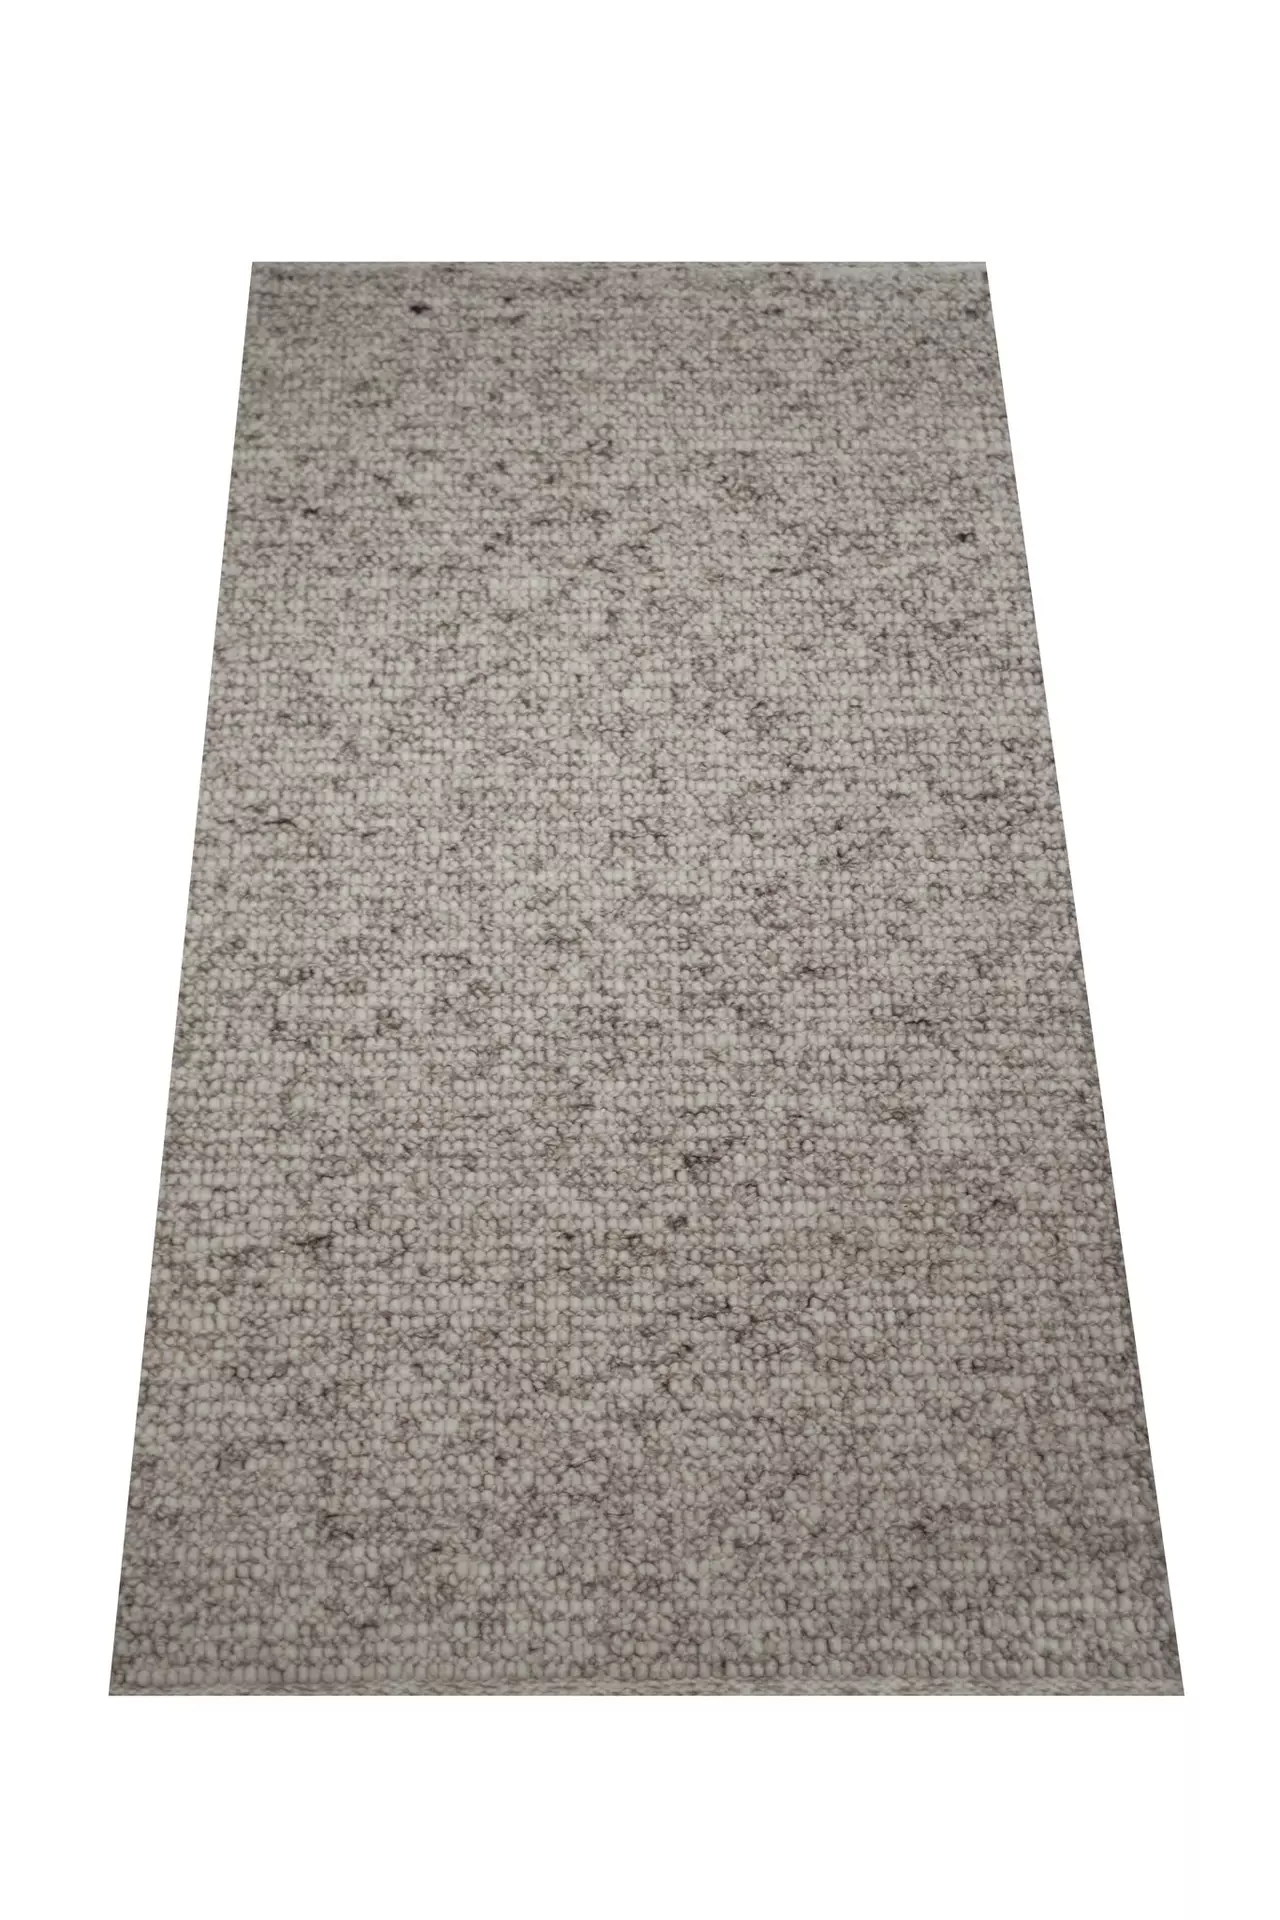 Handwebteppich Weitblick Polaris Allgäuer Teppichmanufaktur Textil 200 x 250 cm